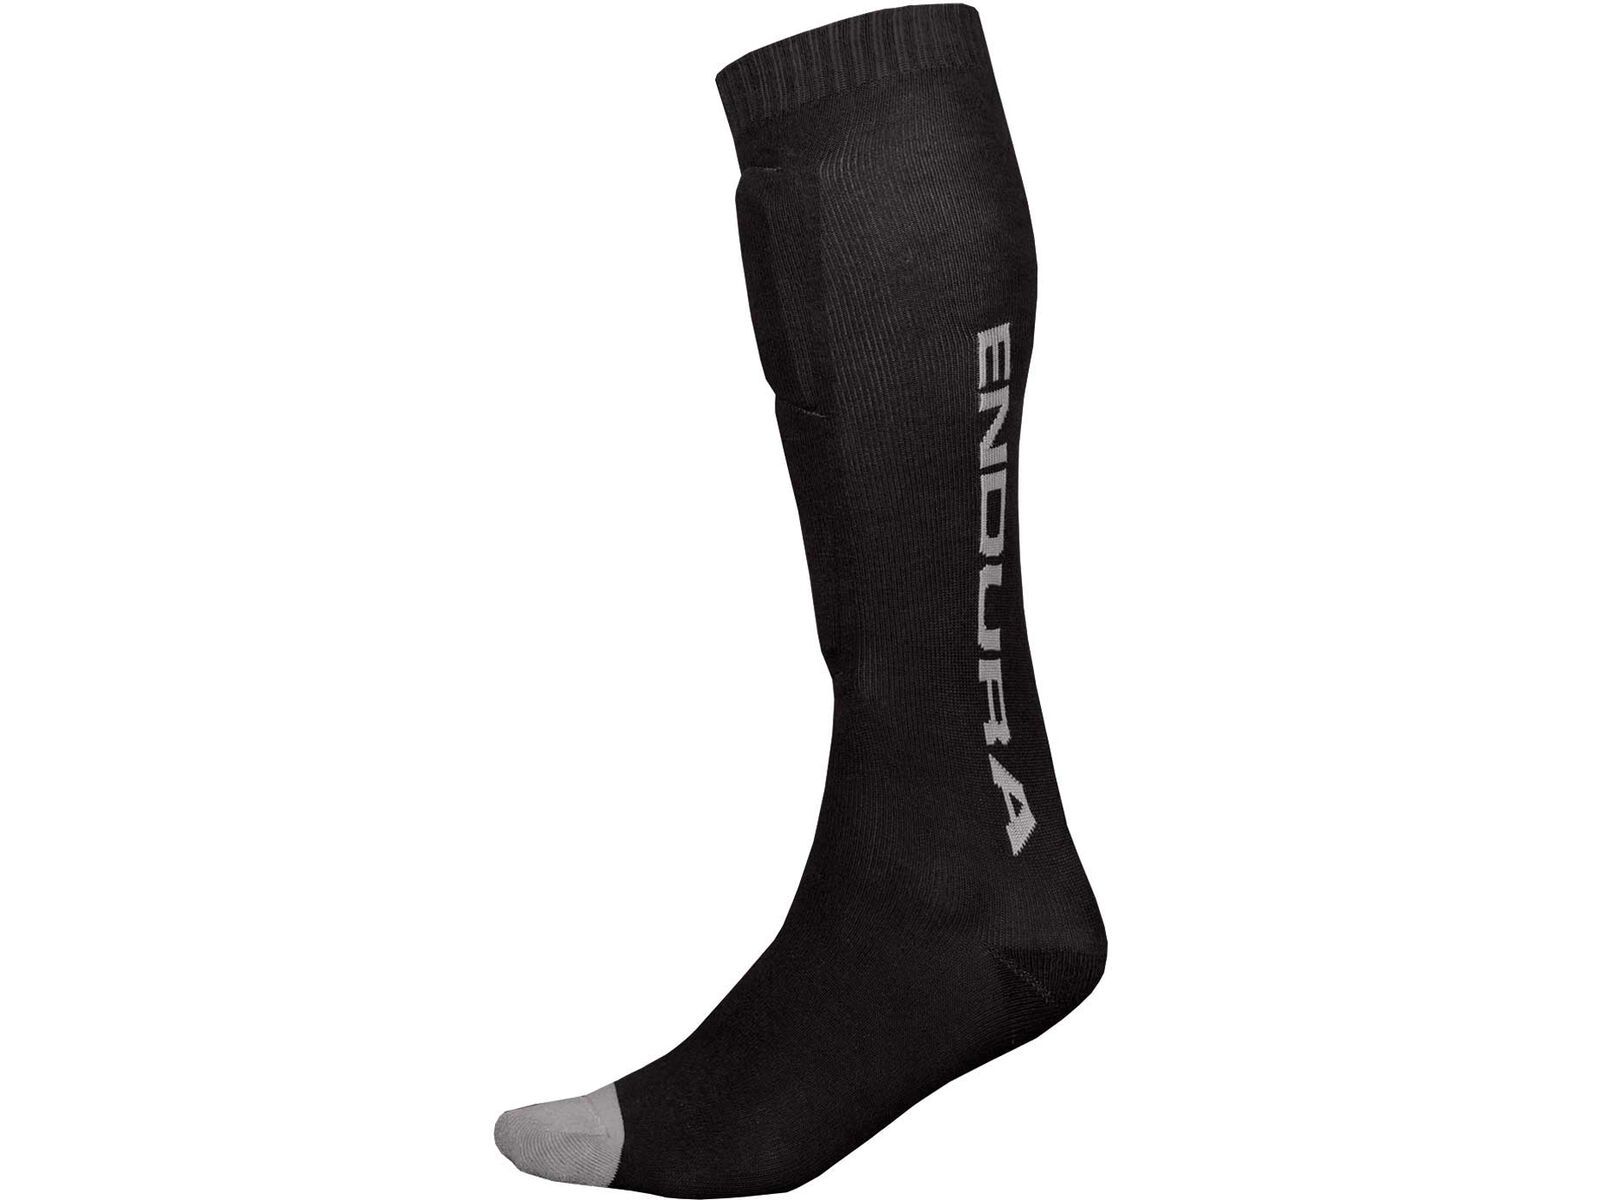 Endura SingleTrack Schienbeinprotektor Socken, schwarz | Bild 1